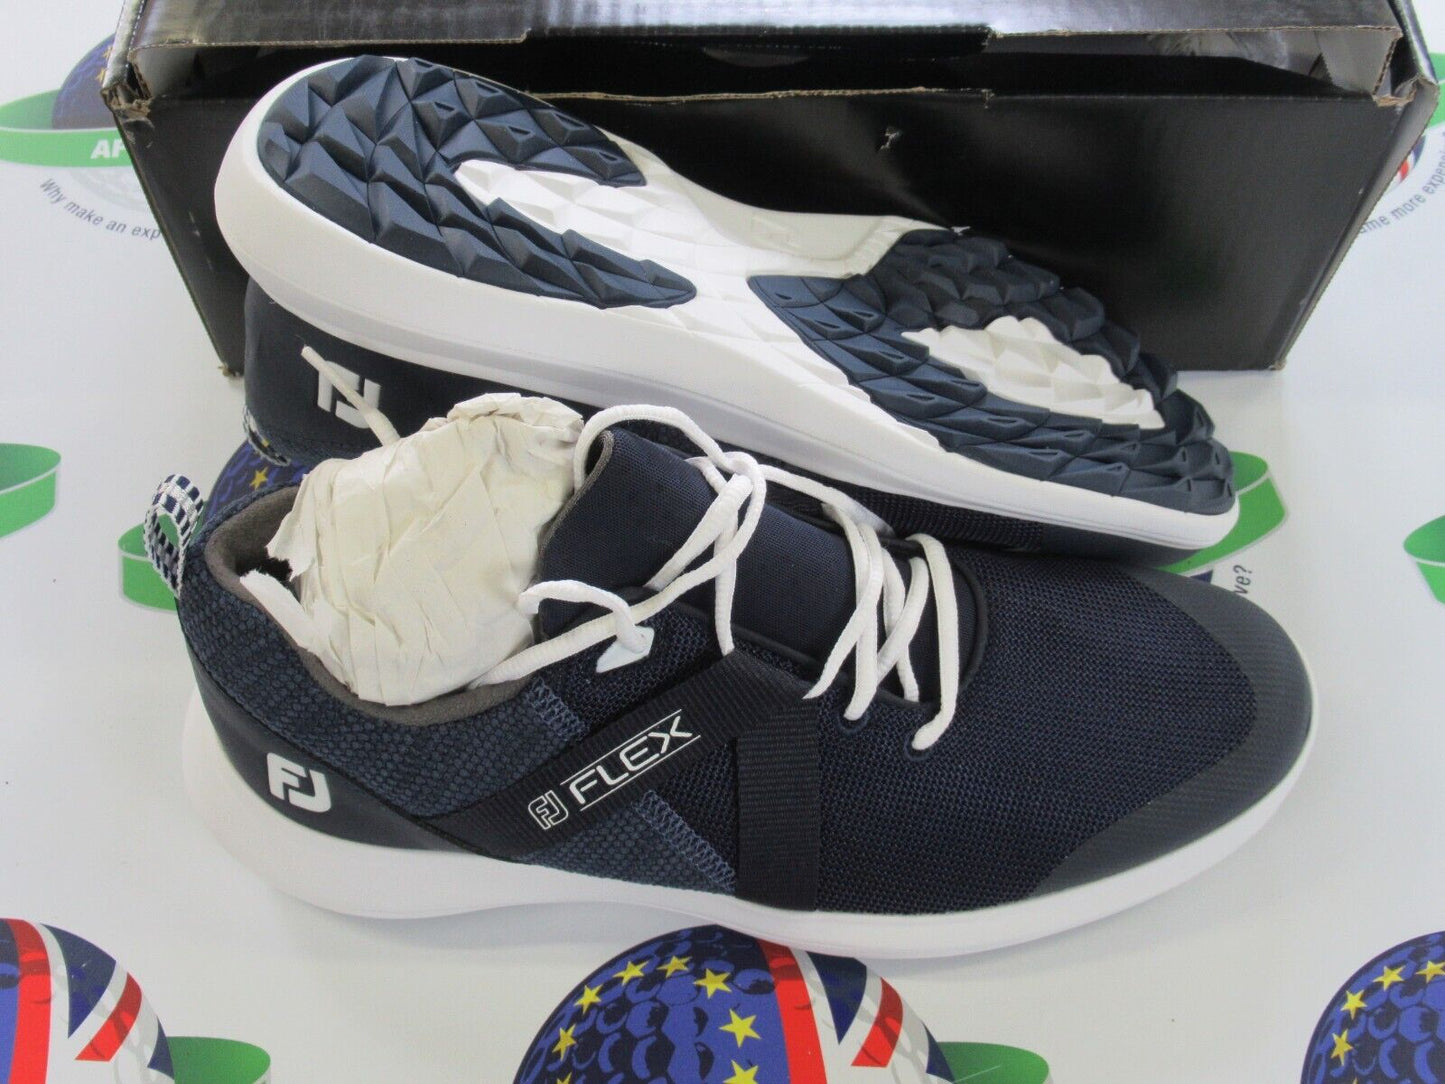 footjoy flex golf shoes 56102k navy/white uk size 8.5 medium